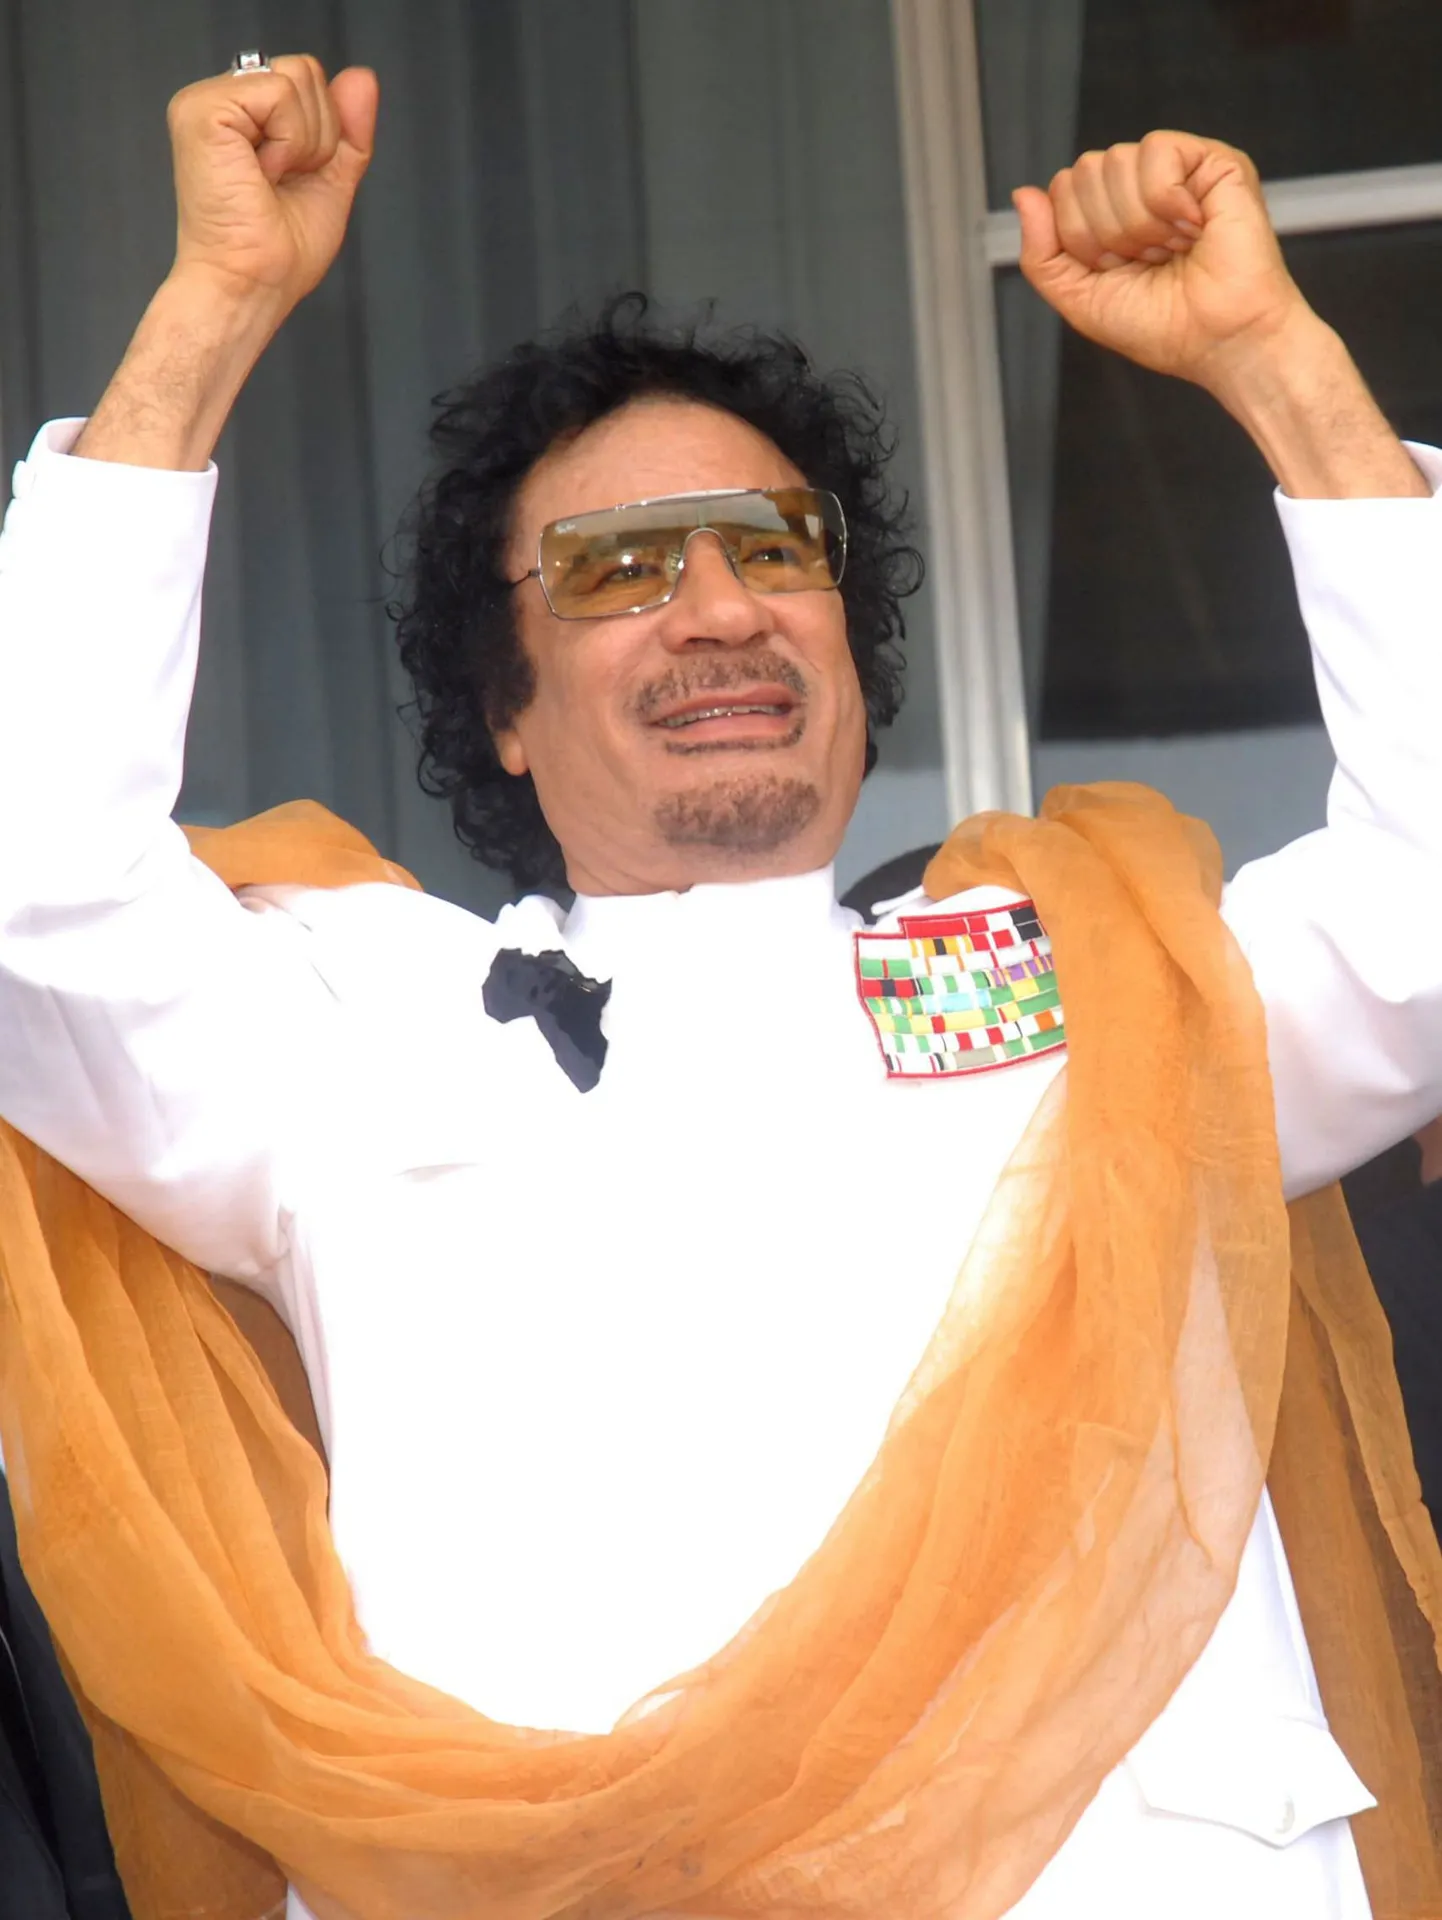 Liibüa liider Muammar Gaddafi.